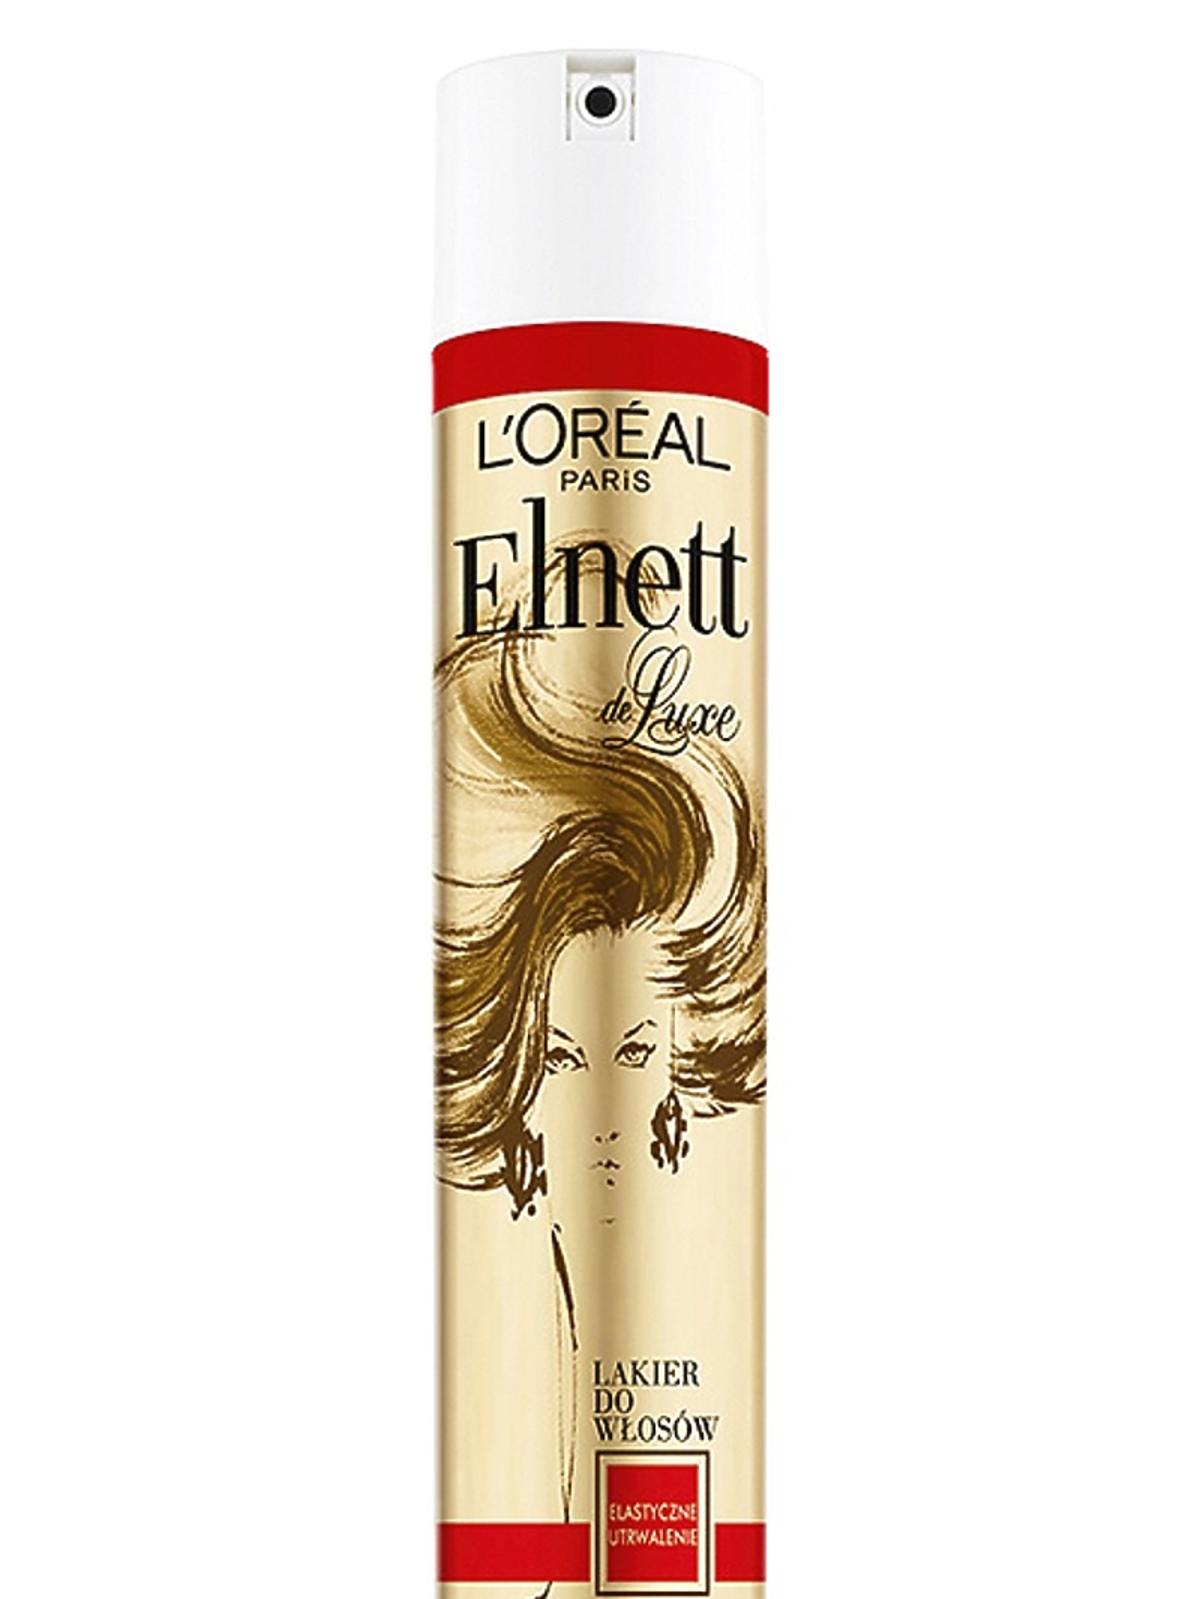 Lakier do włosów Elastyczne utrwalenie - Elnett De Luxe, L'Oreal Paris, cena: 17 zł